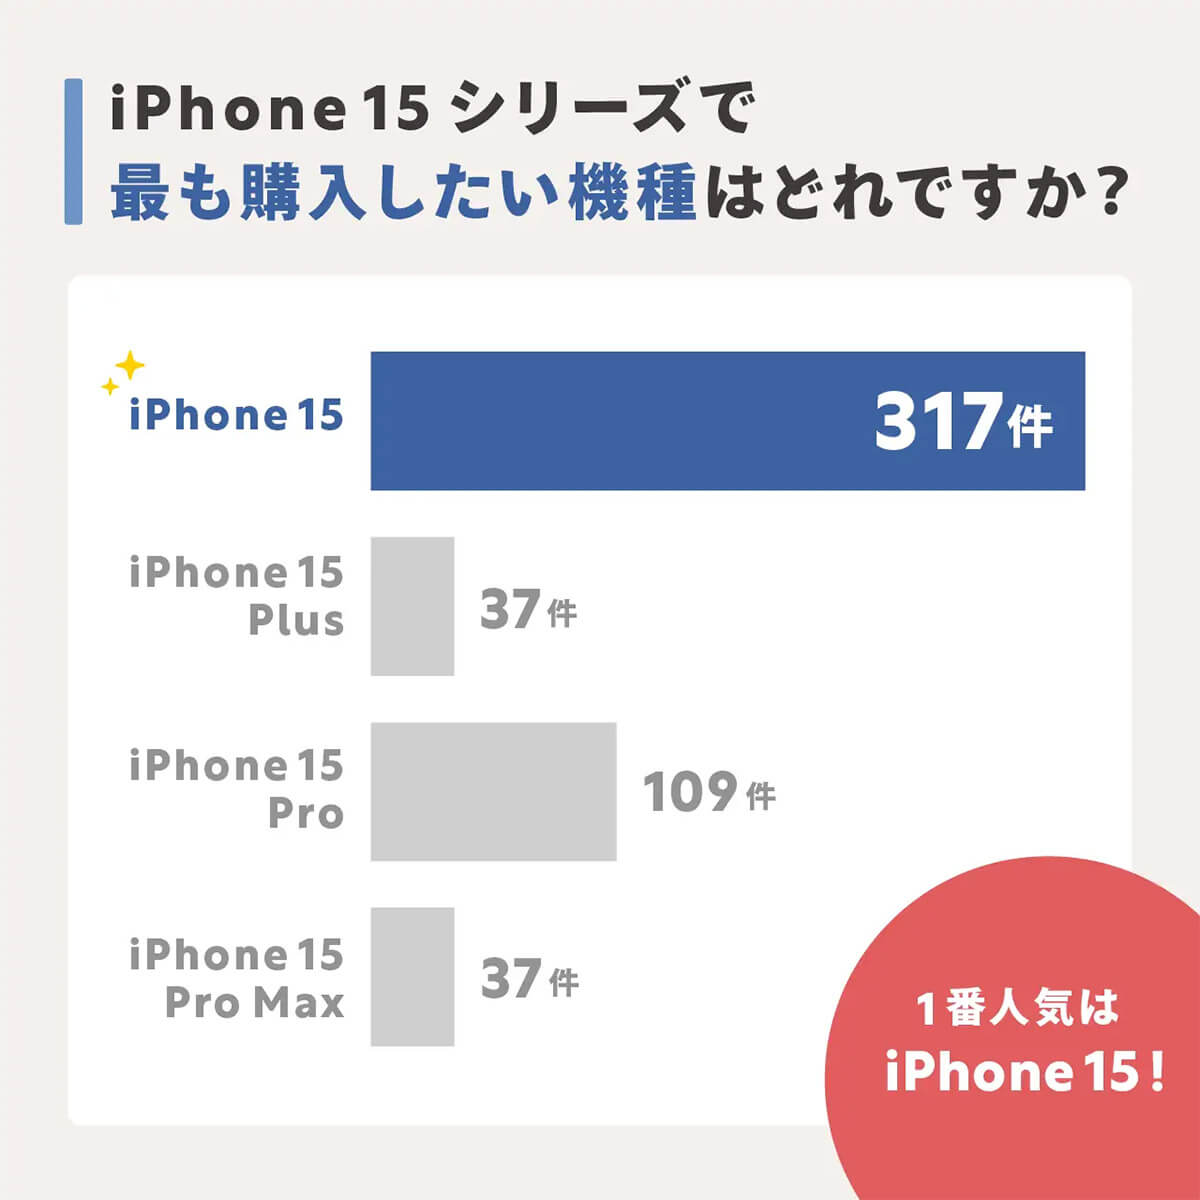 iPhone 15シリーズで購入したい機種はどれ？